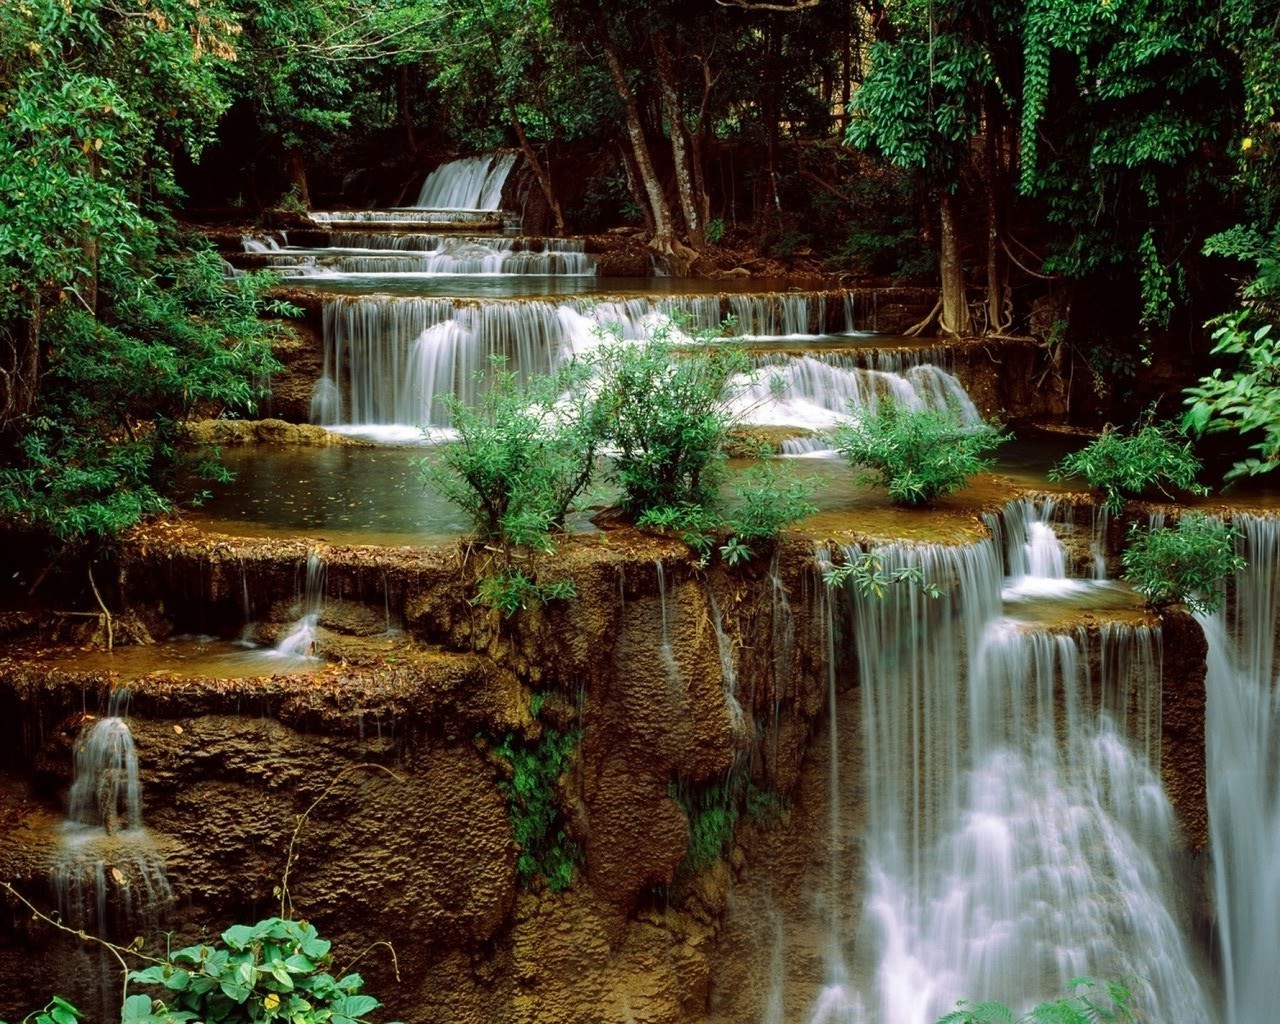 водопады воды водопад природа поток мокрый река тропический древесины лист осень камень каскад бассейн поток на открытом воздухе парк крик рок путешествия